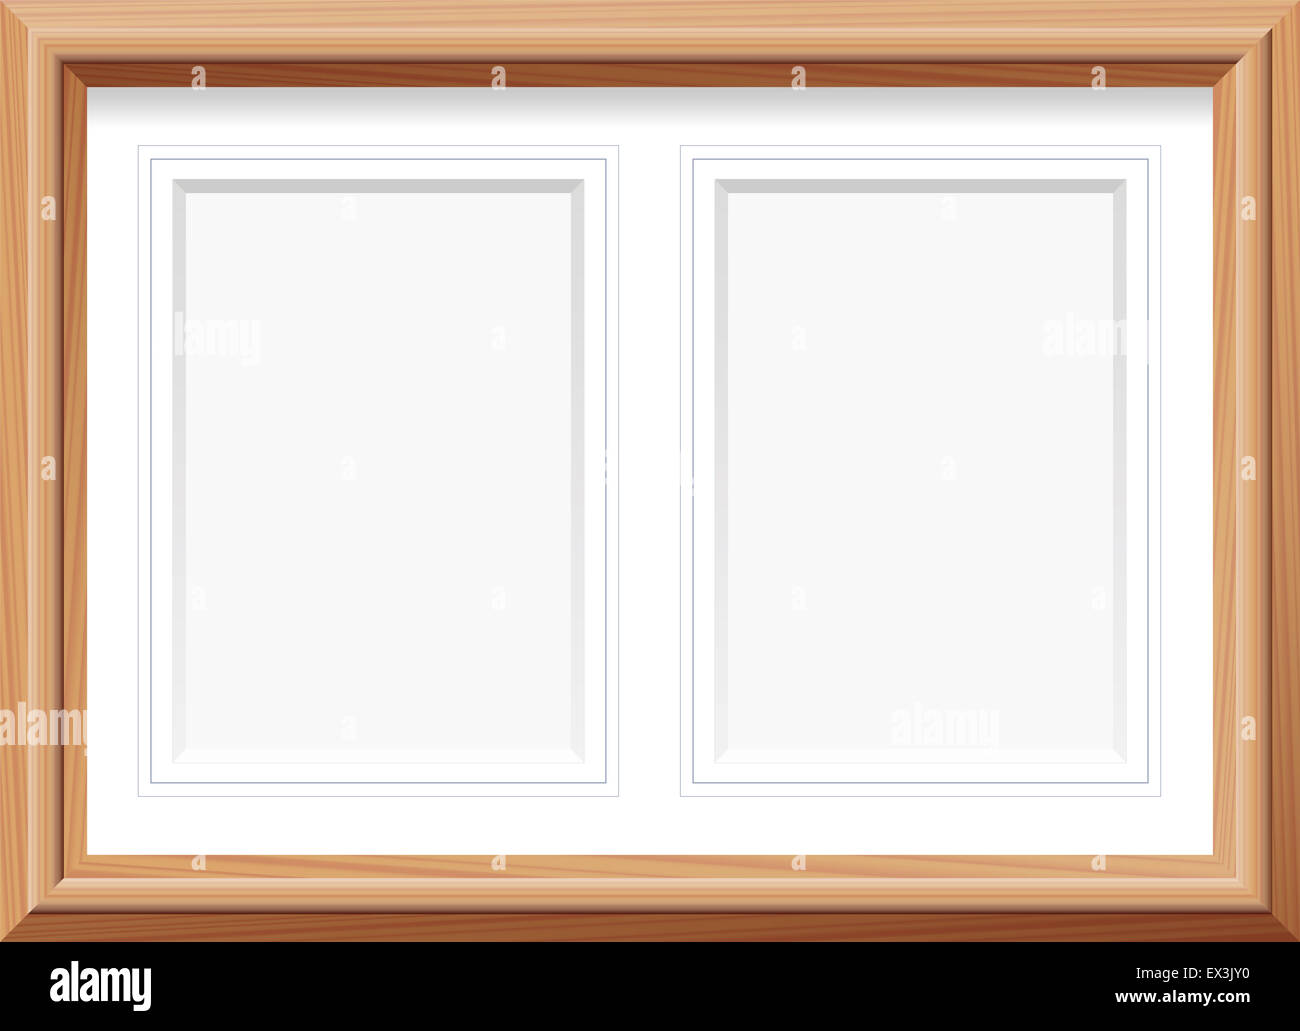 Immagine orizzontale il telaio con due formato ritratto stuoie per due immagini. Illustrazione. Foto Stock